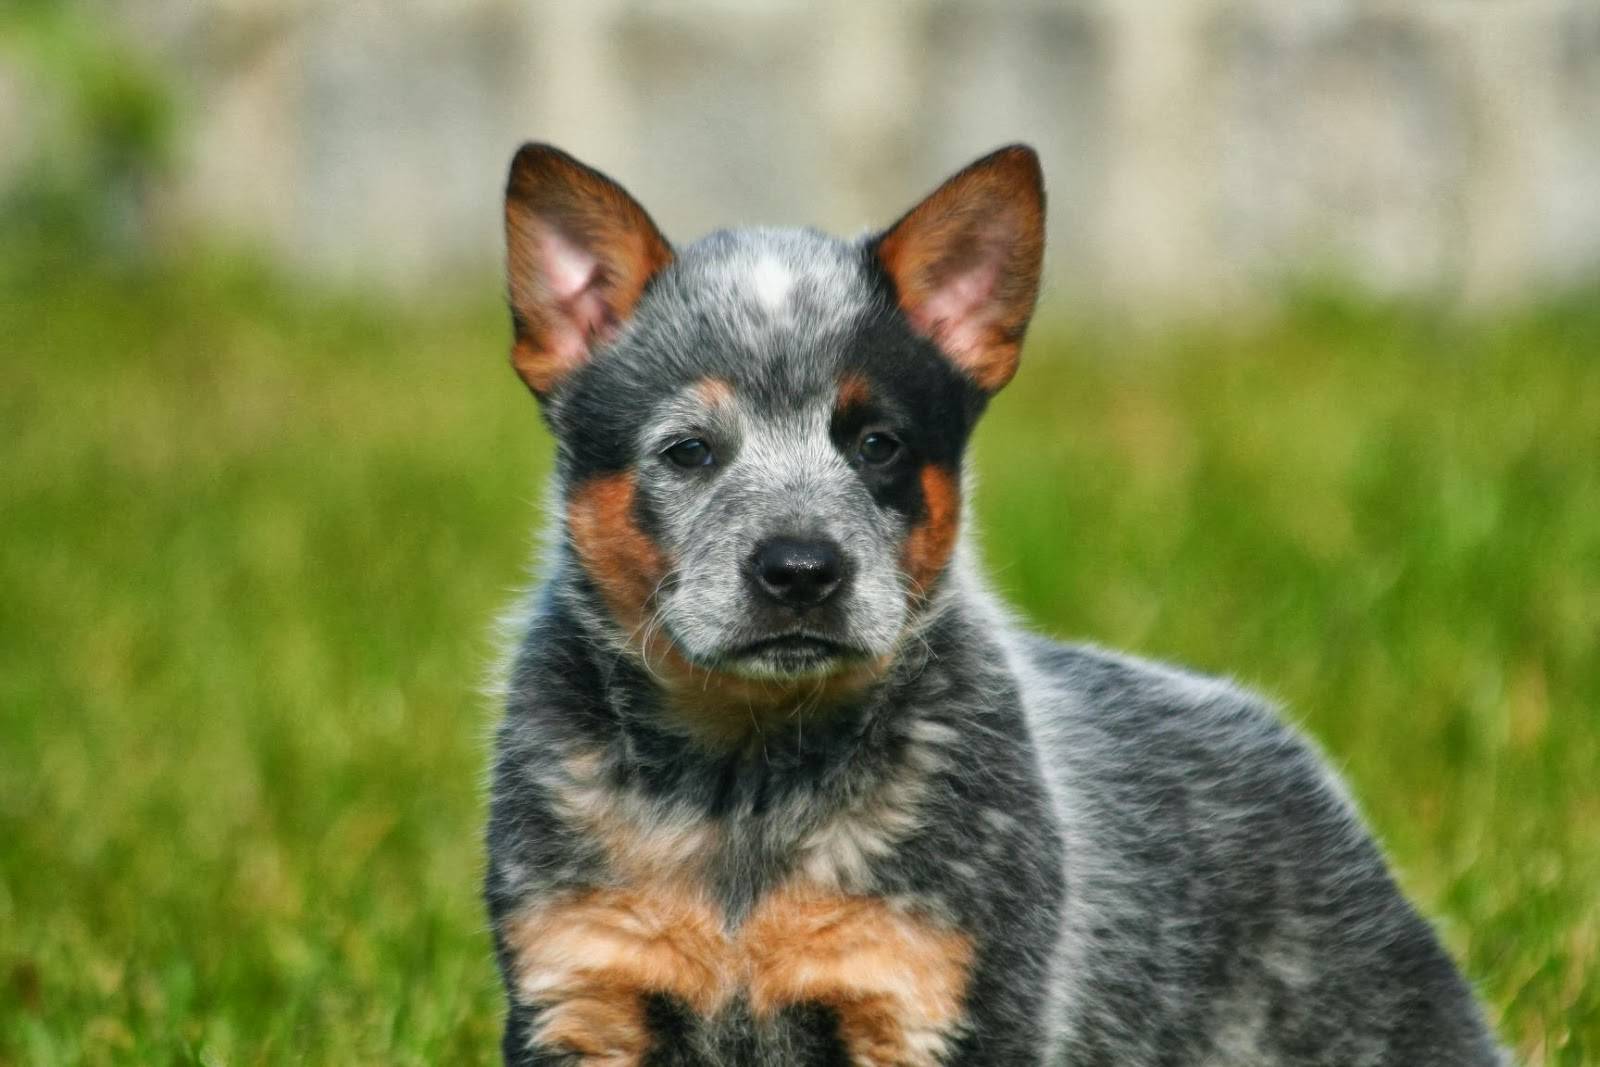 Австралийская пастушья собака (хилер или кеттл дог): описание породы, с фото, видео и отзывами владельцев